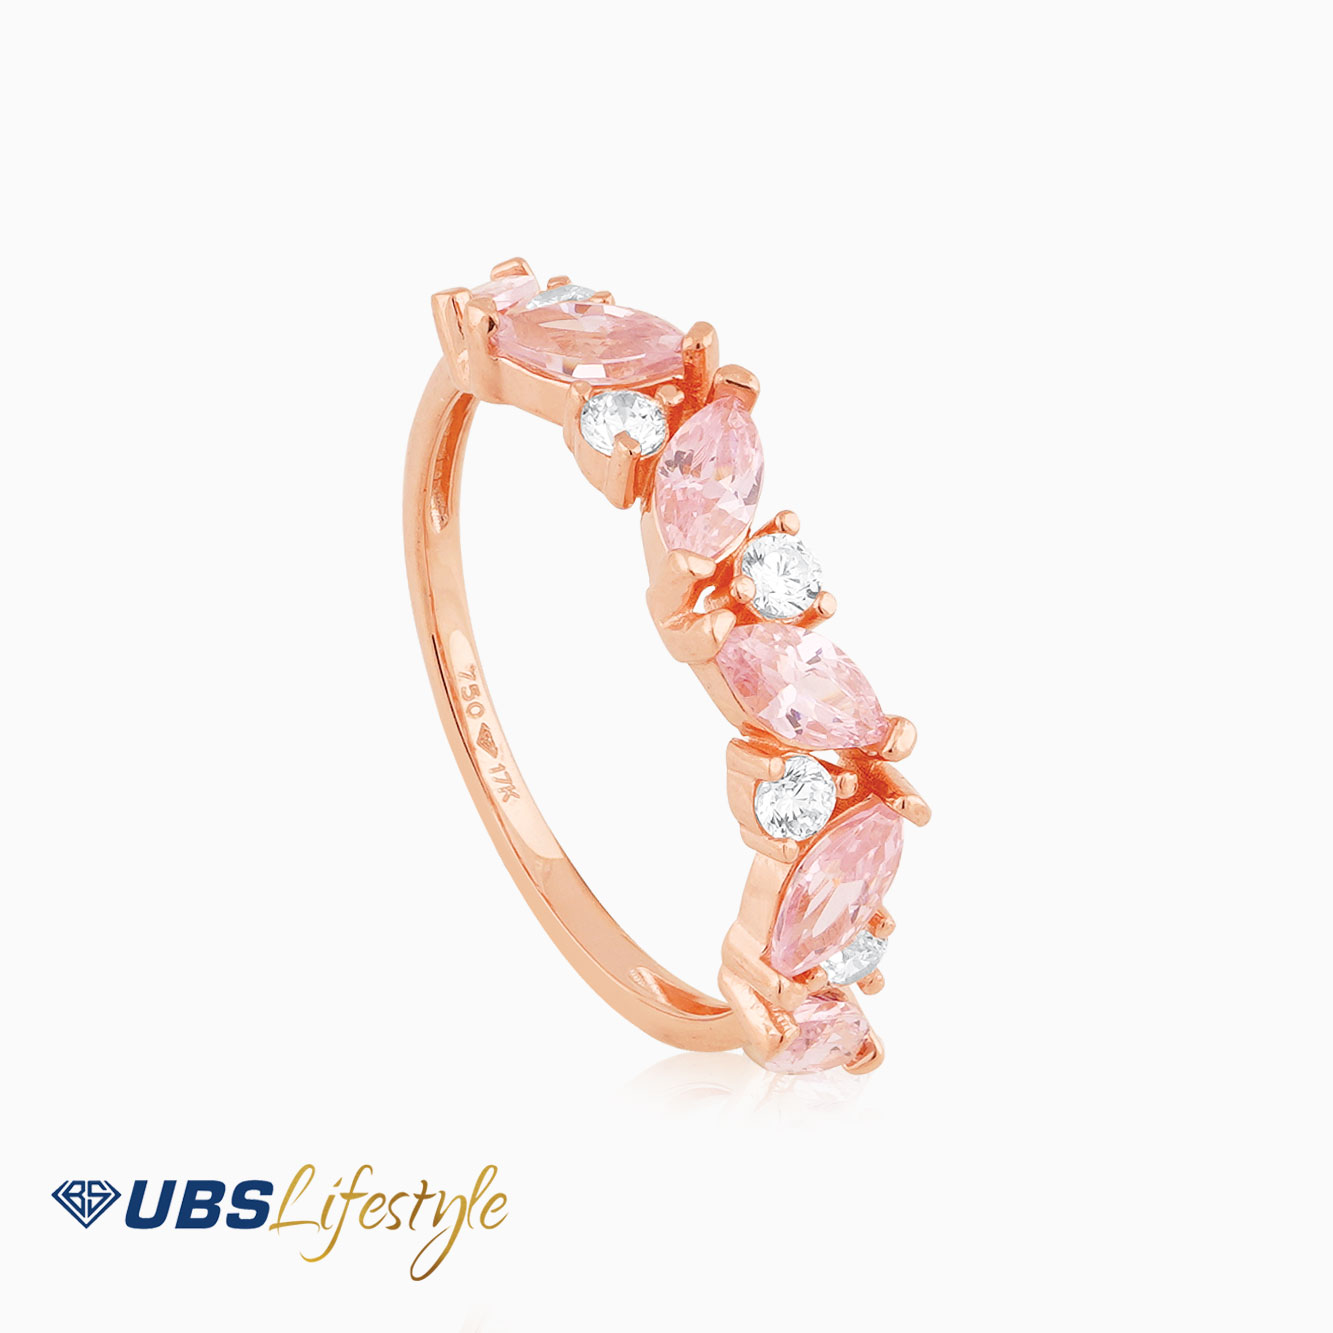 UBS Cincin Emas Rachel Rose - Cc16122RP - 17K - Batu Pink